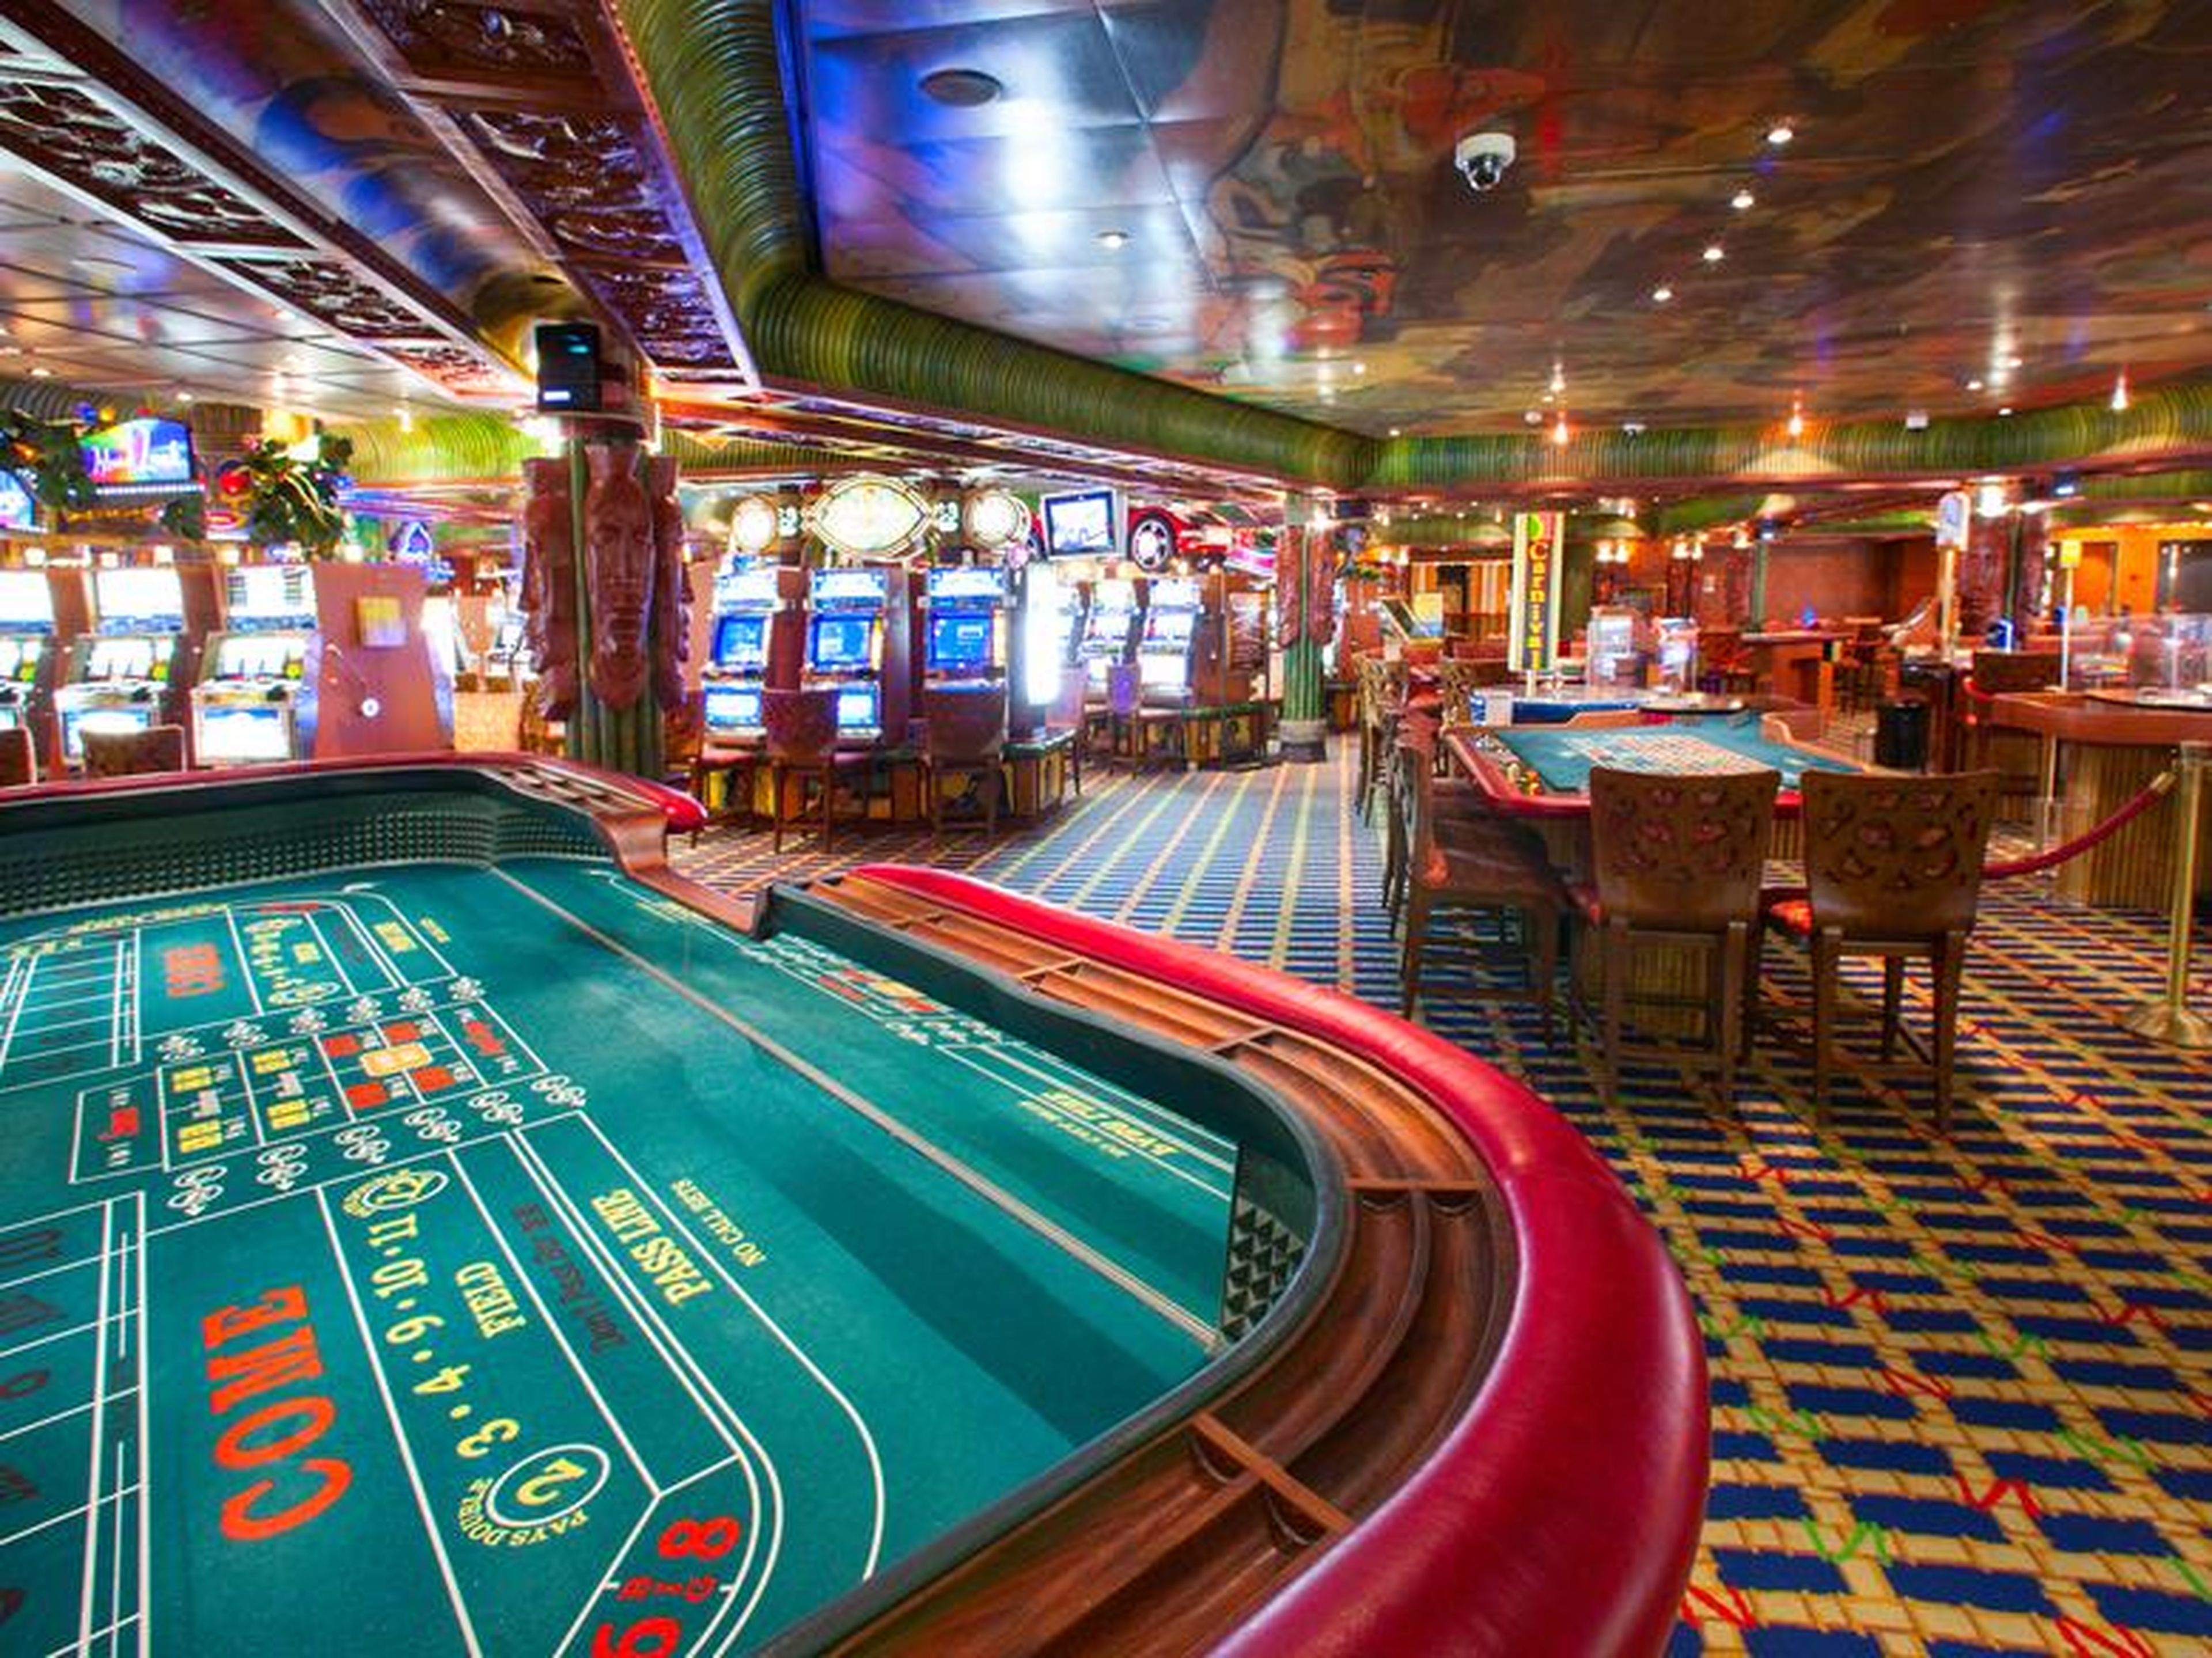 La mayoría de los casinos de los cruceros están abiertos son unas horas y los pasajeros menores de 18 años no tienen permitida la entrada.